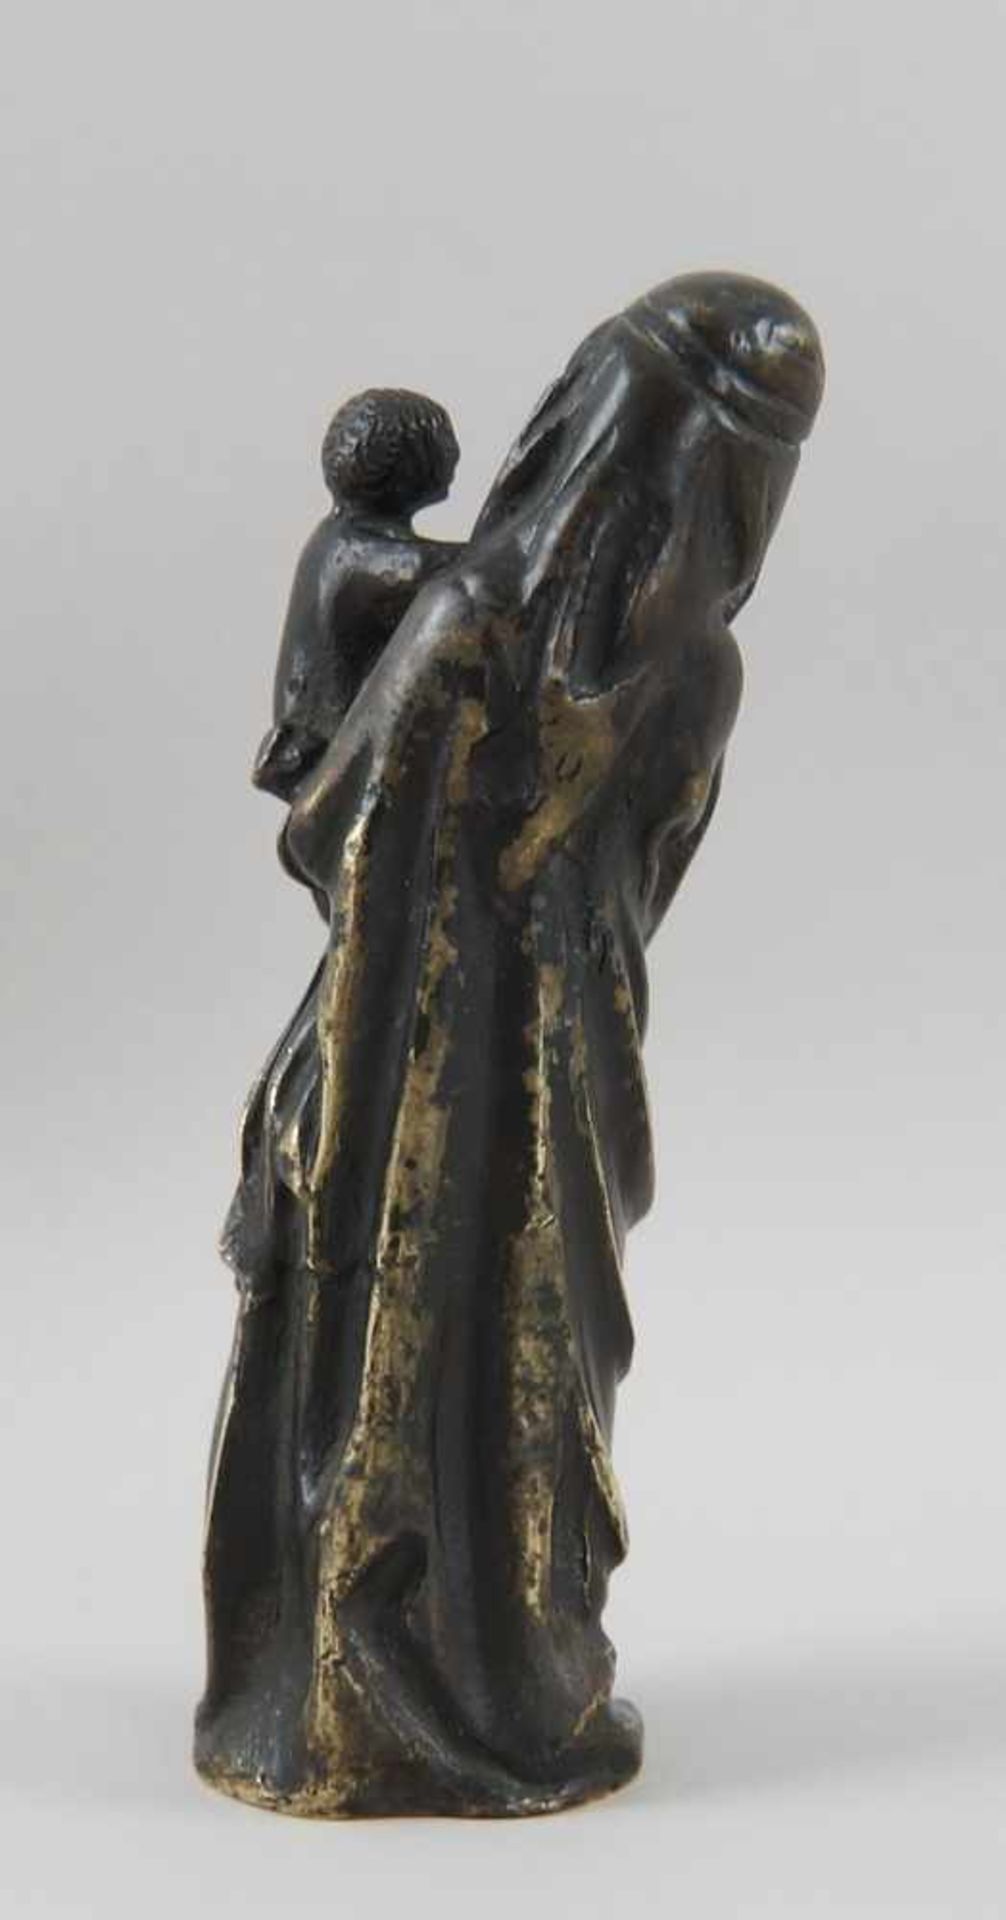 Gotische Skulptur einer Madonna mit Kind, Bronze, wohl um 1500, H 17,5 cm - Bild 5 aus 8